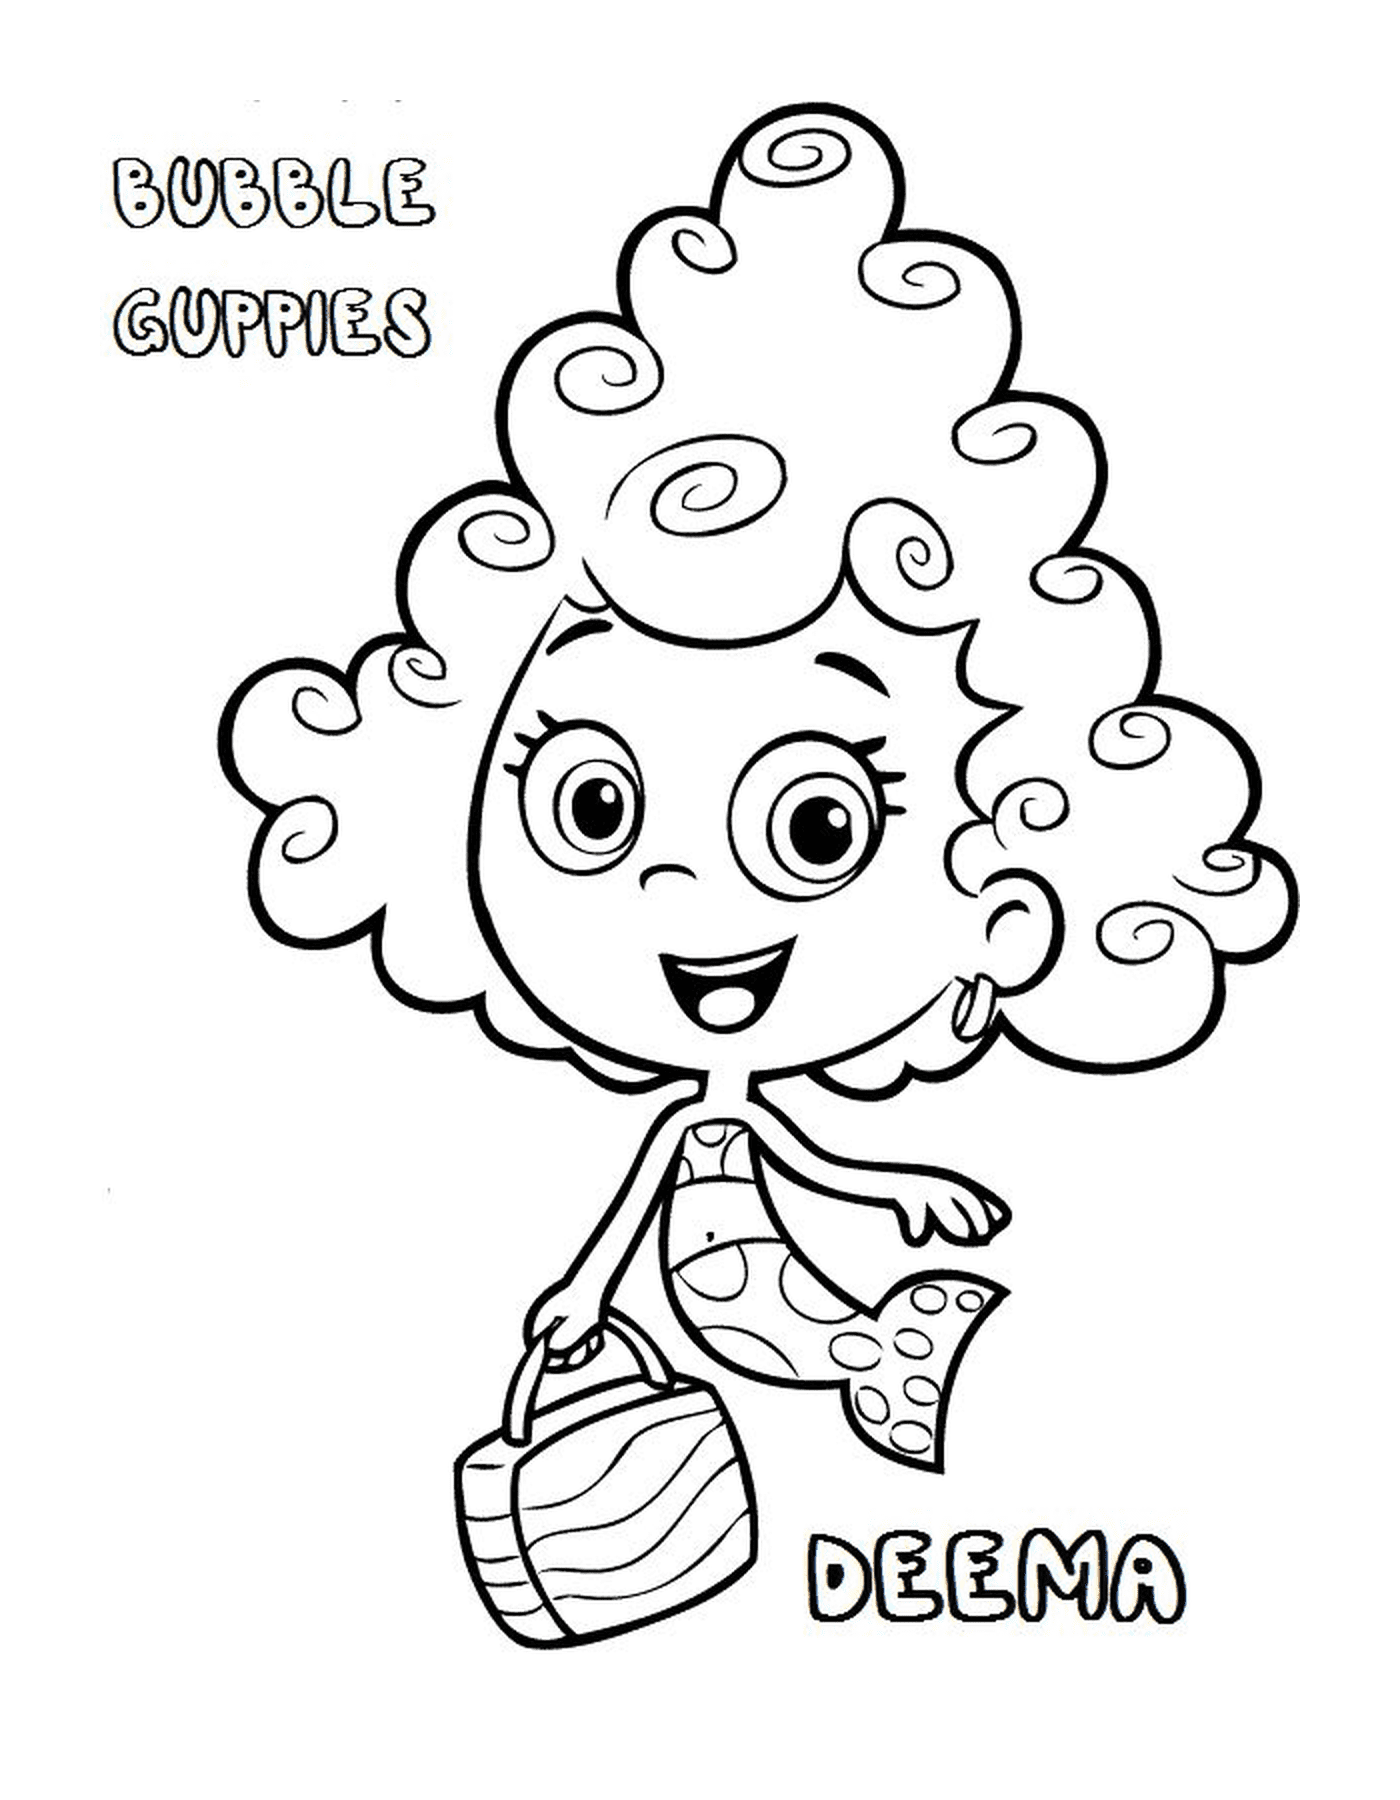   Deema des Bubble Guppies, une fille aux cheveux bouclés 